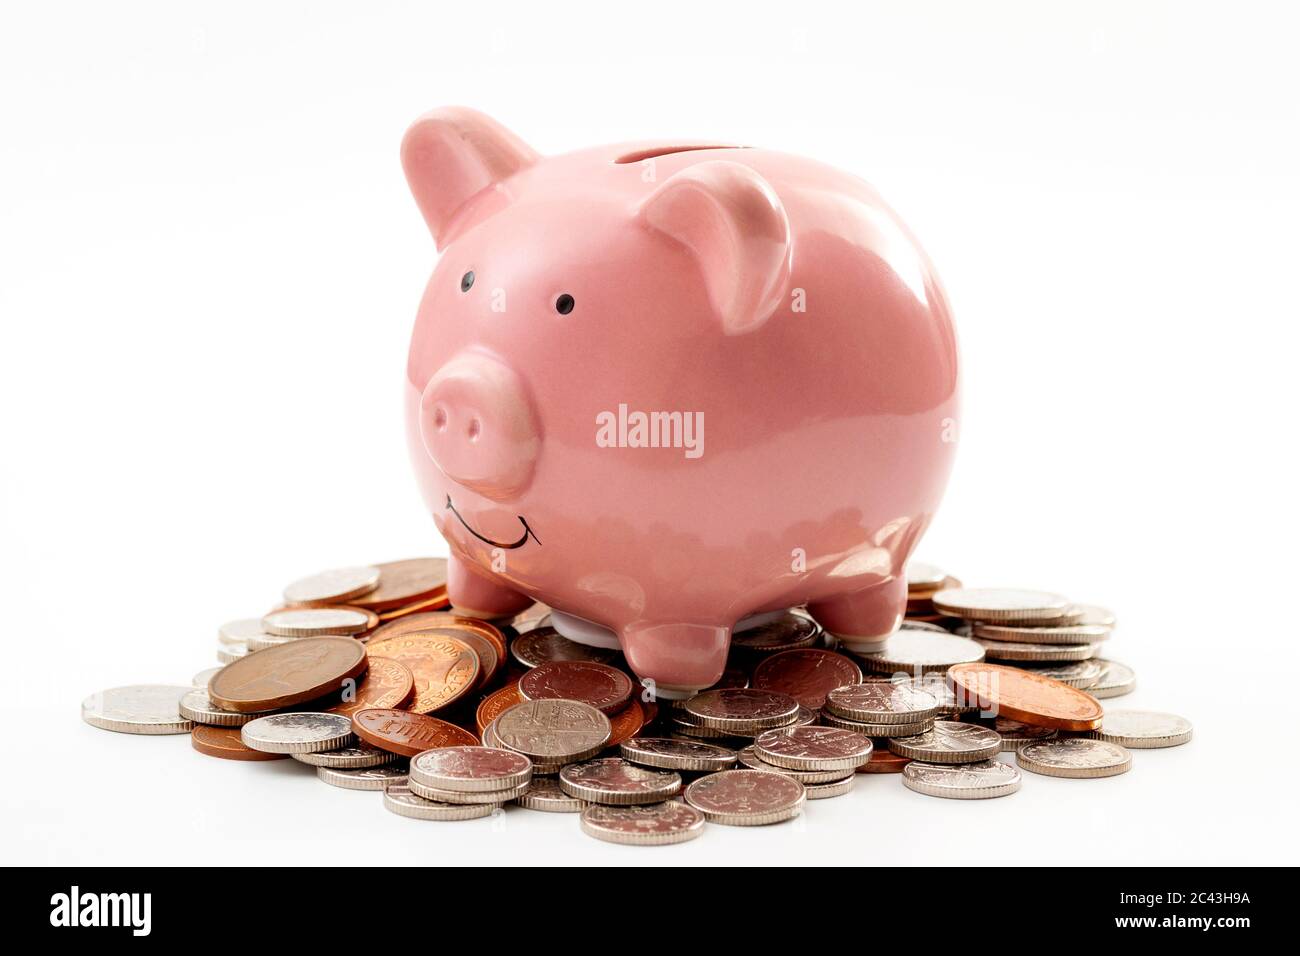 Économisez de l'argent, la planification financière de finances personnelles et être thrifty concept thème avec une banque de porc rose assis sur un tas de bronze et de l'argent colo Banque D'Images